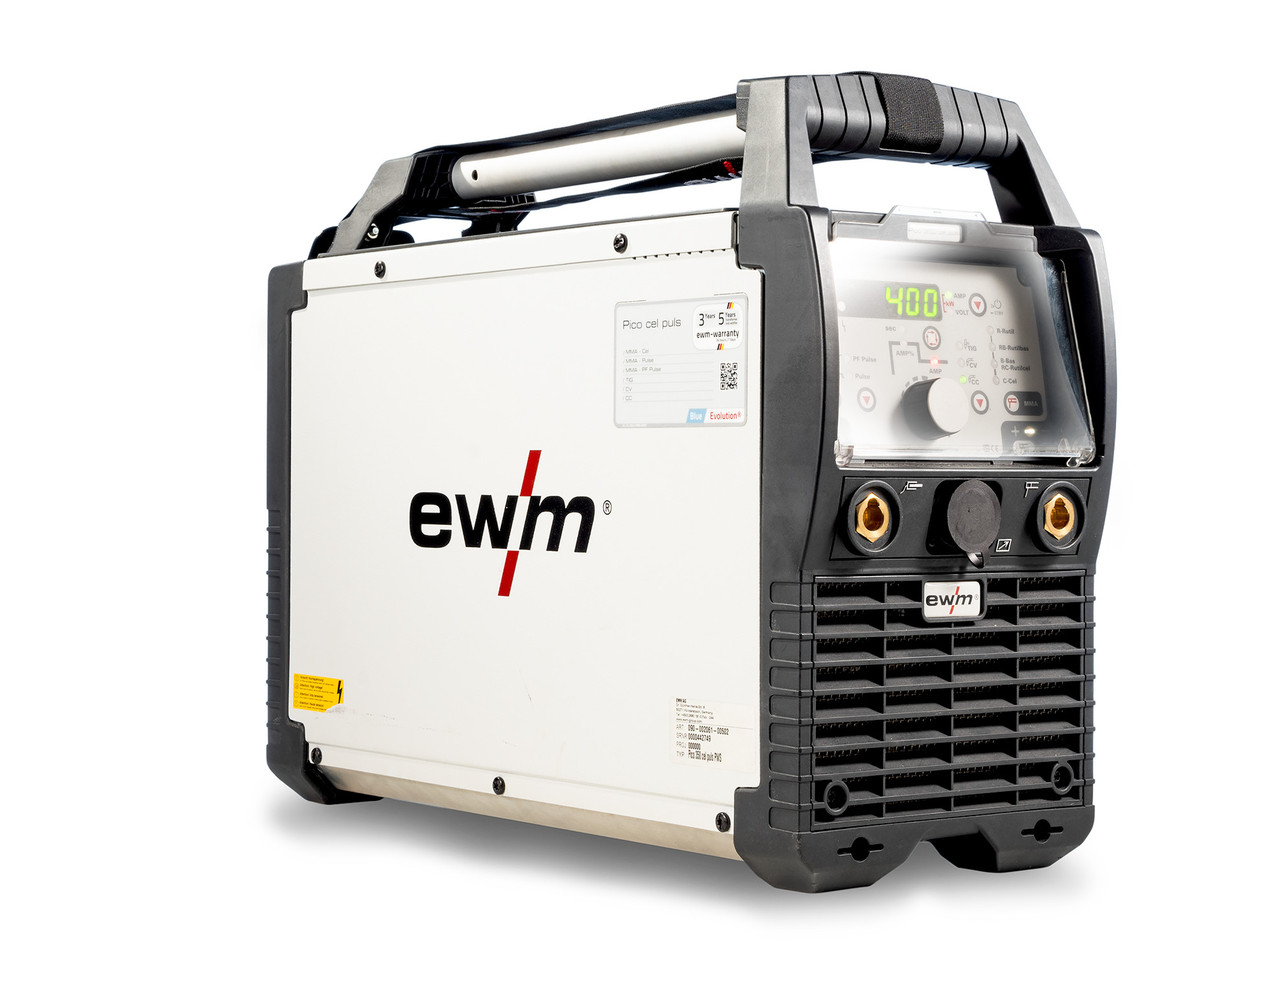 EWM Апарат для зварювання електродами Pico 400 cel puls